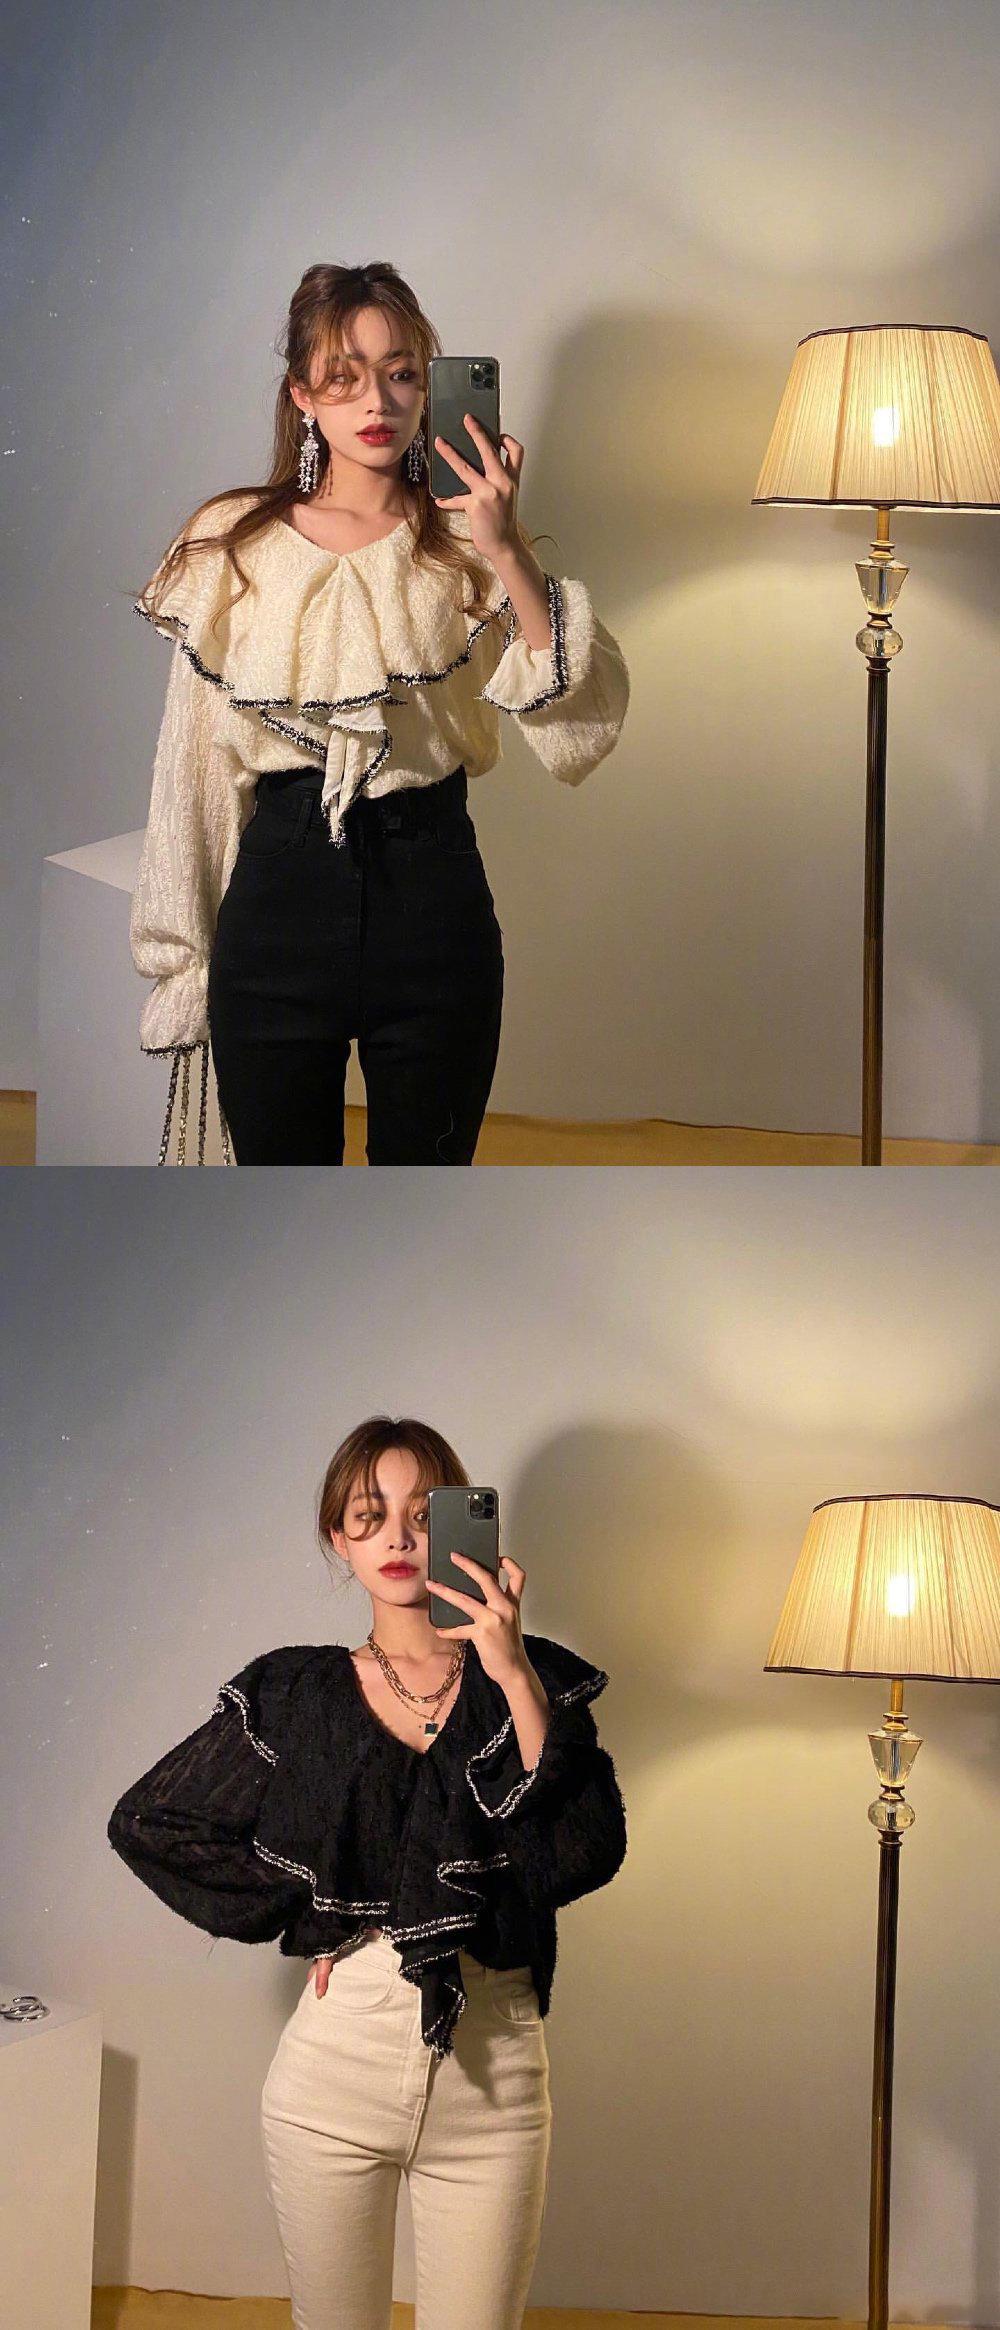 韩国欧尼的每日对镜自拍,这穿搭真的太有品位了!瞬间爱上!